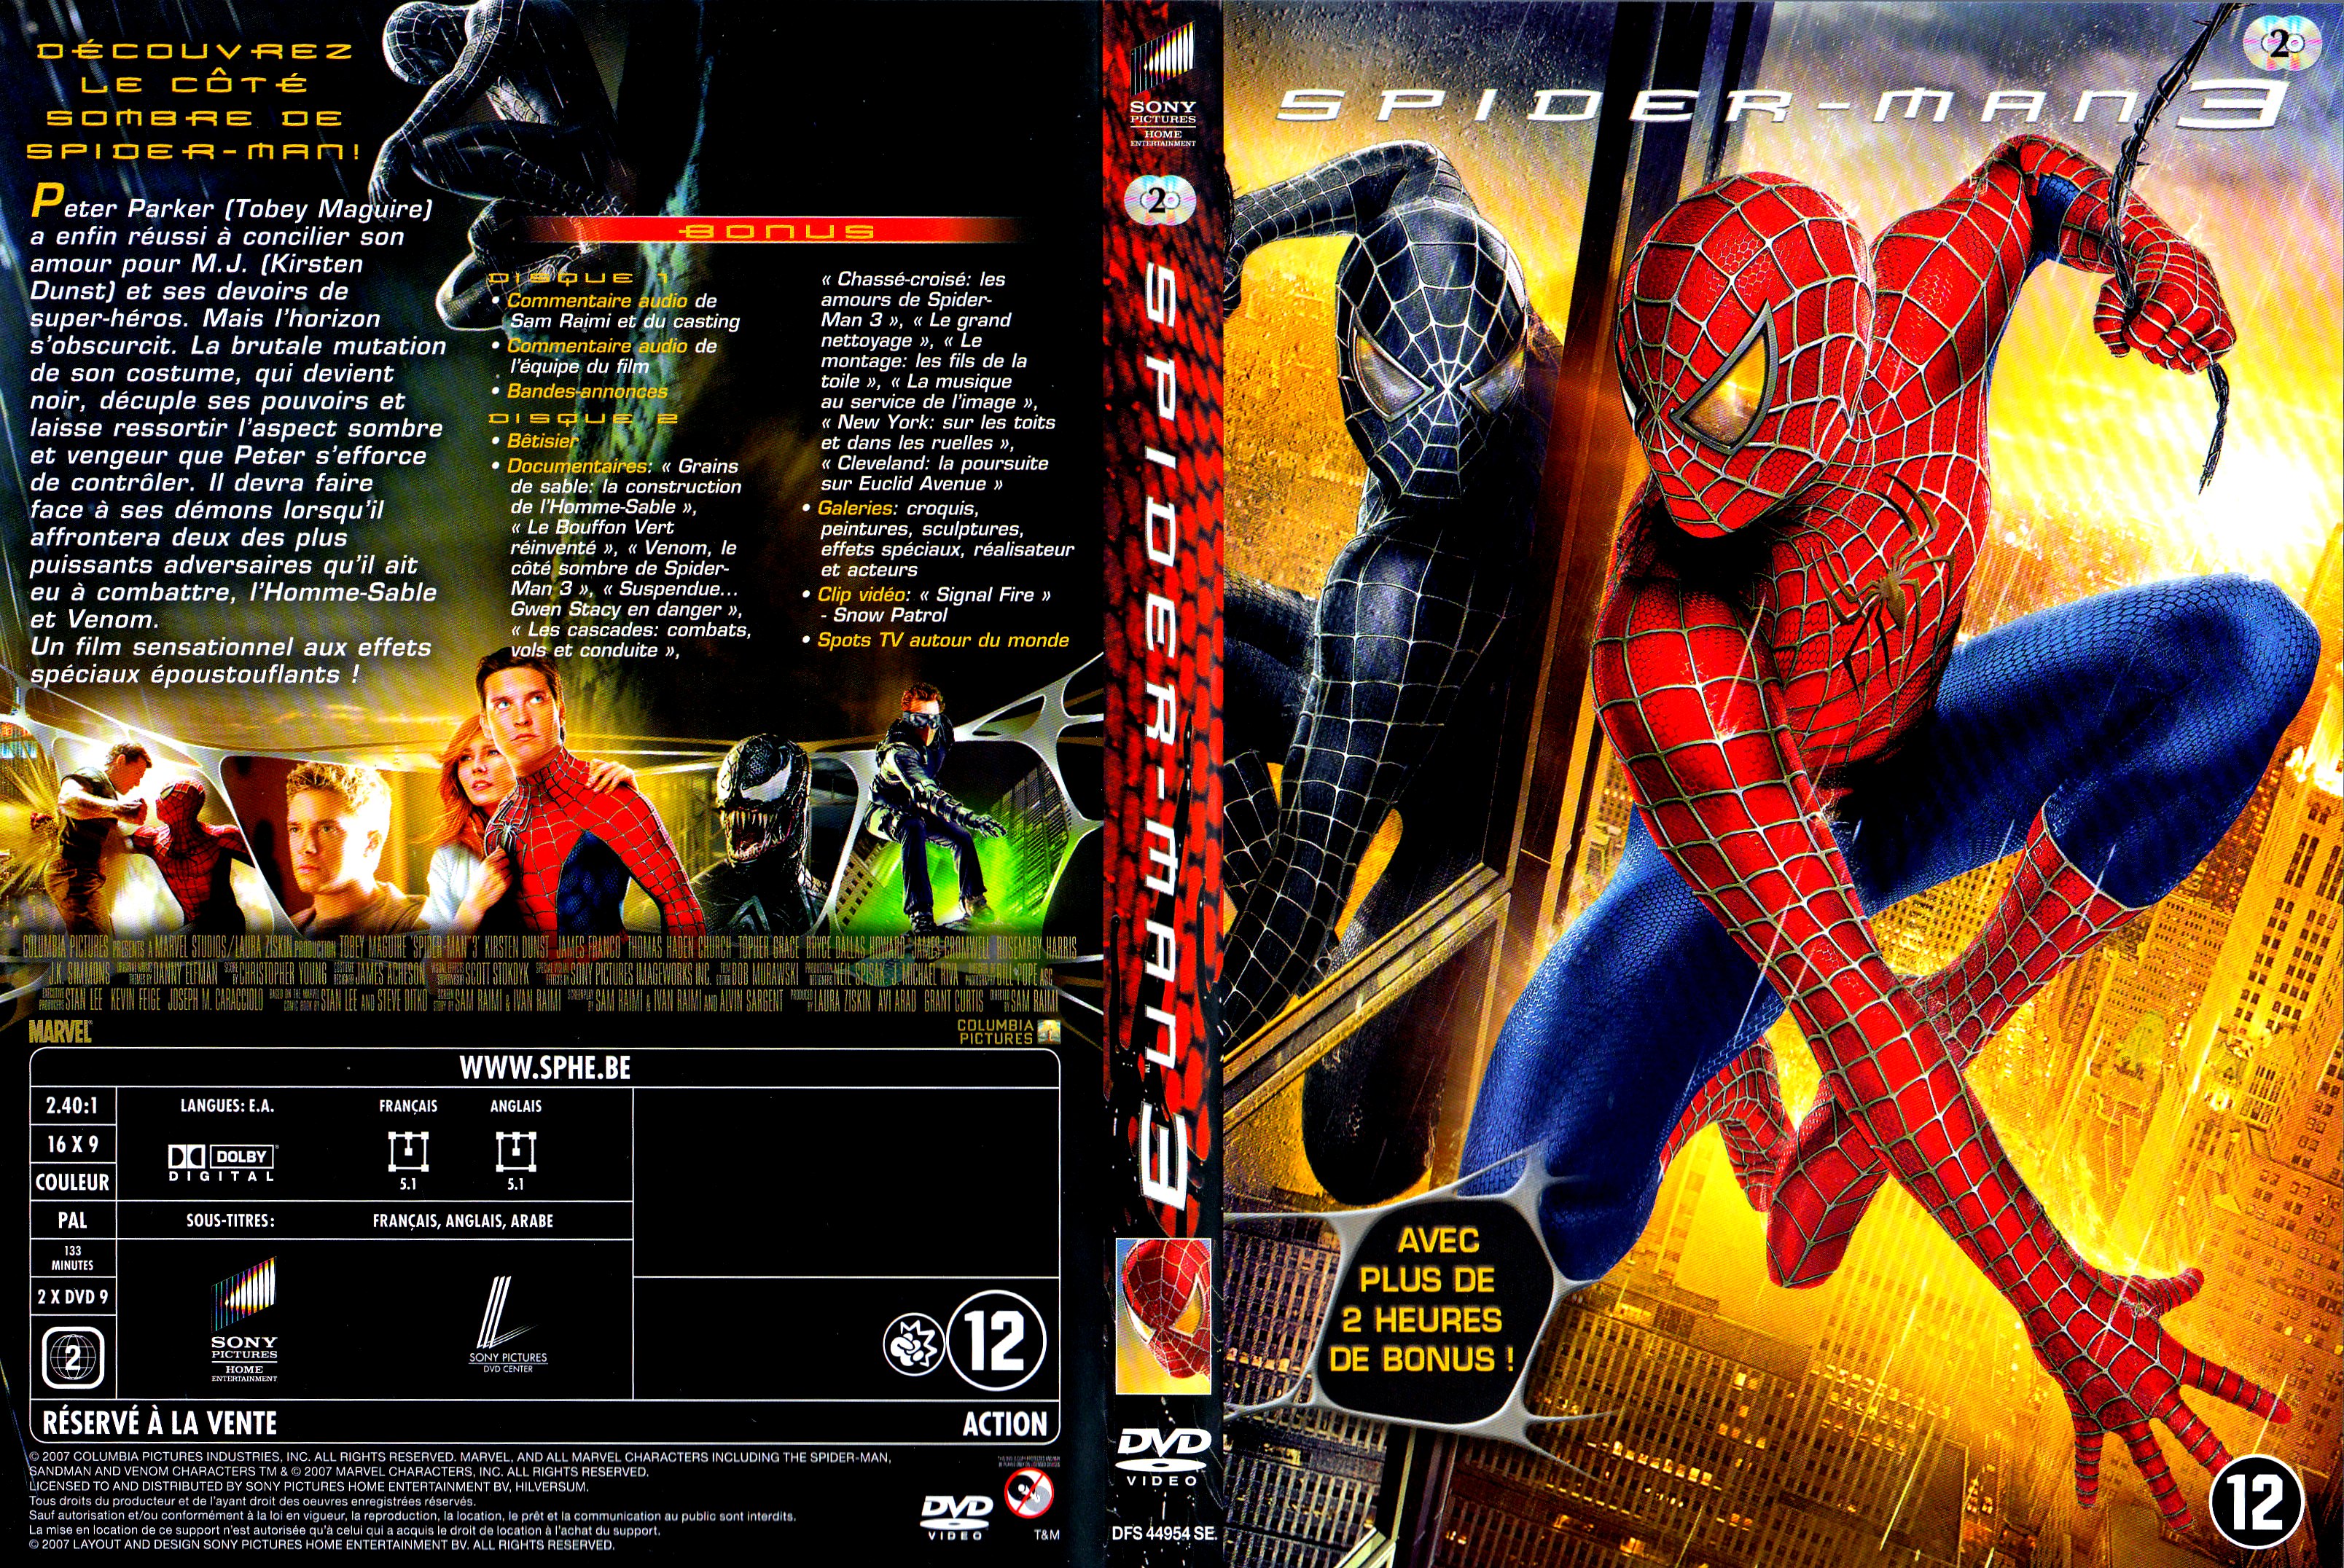 Jaquette DVD Spiderman 3 v4